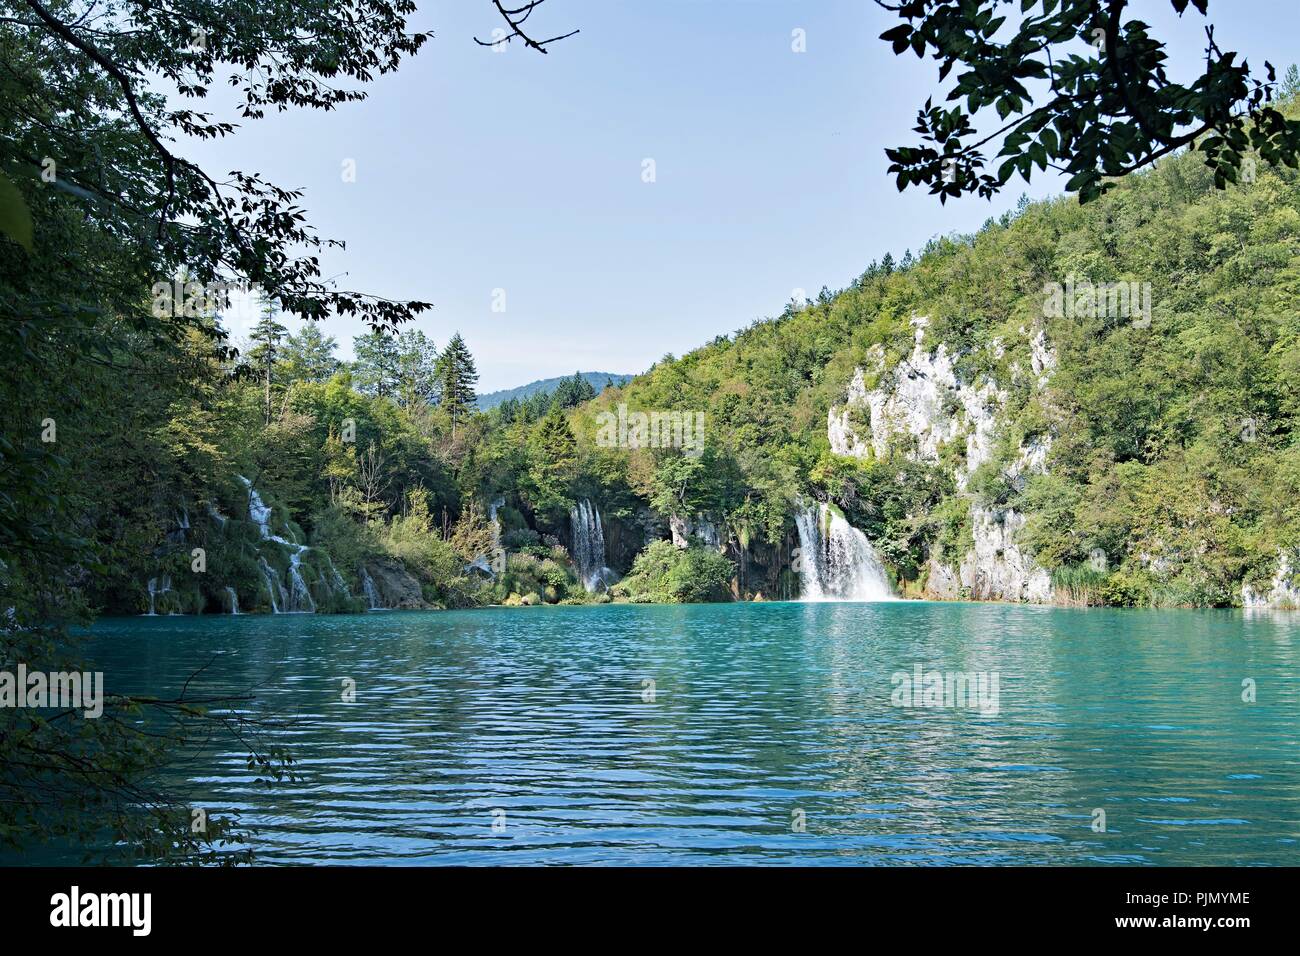 Il Parco Nazionale dei Laghi di Plitvice in Croazia è la più famosa attrazione turistica e luogo di naturale bellezza protetta. Foto Stock